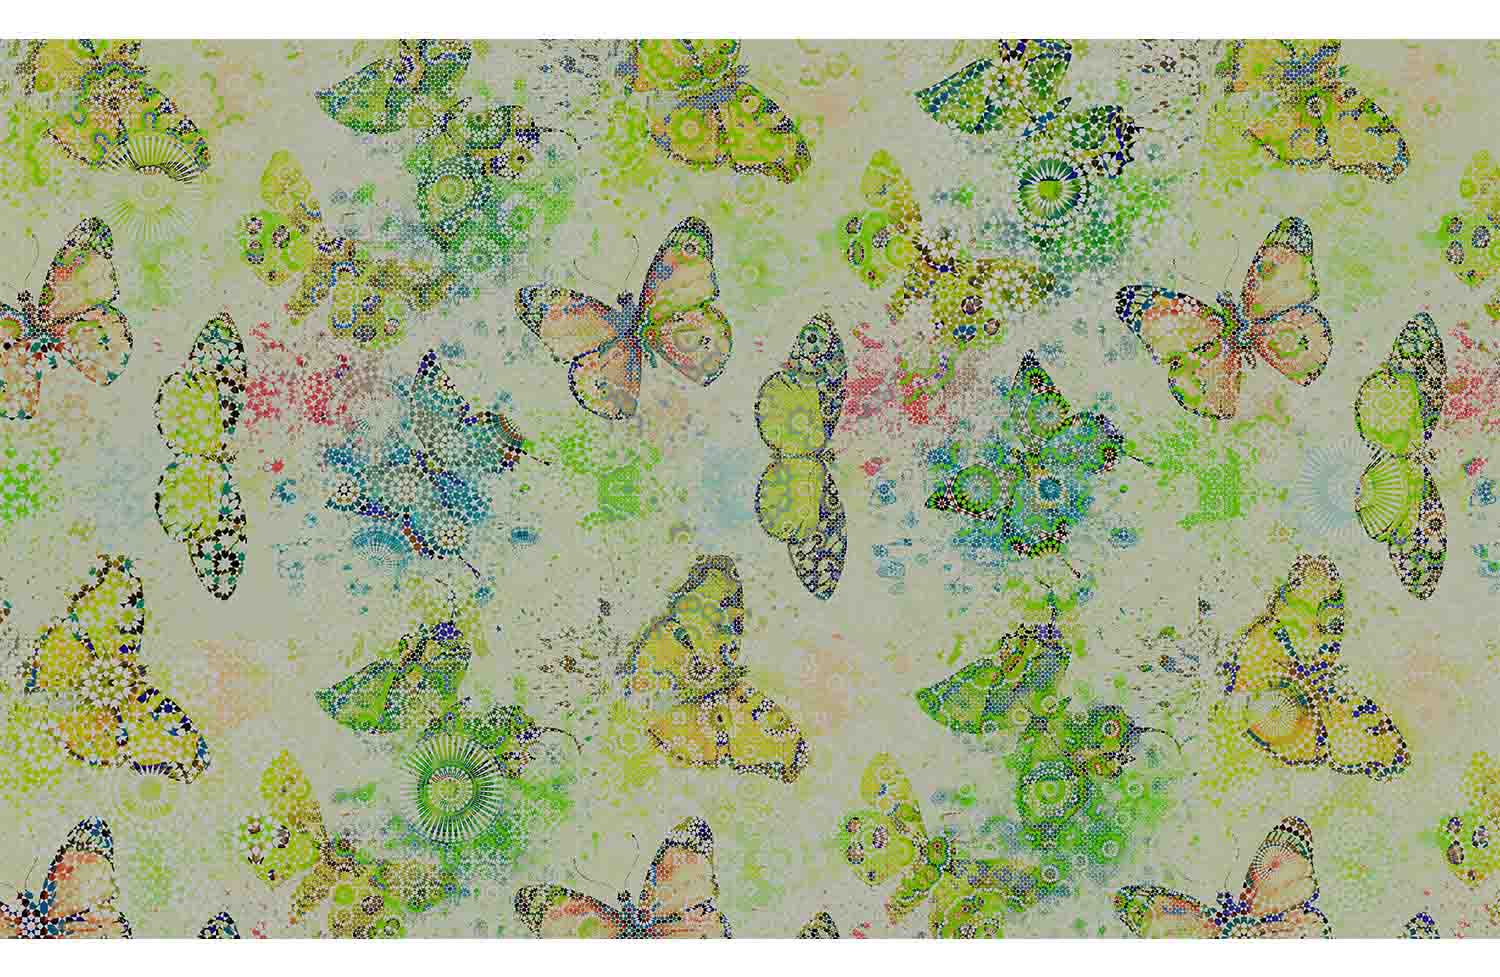 Mosaic Butterflies